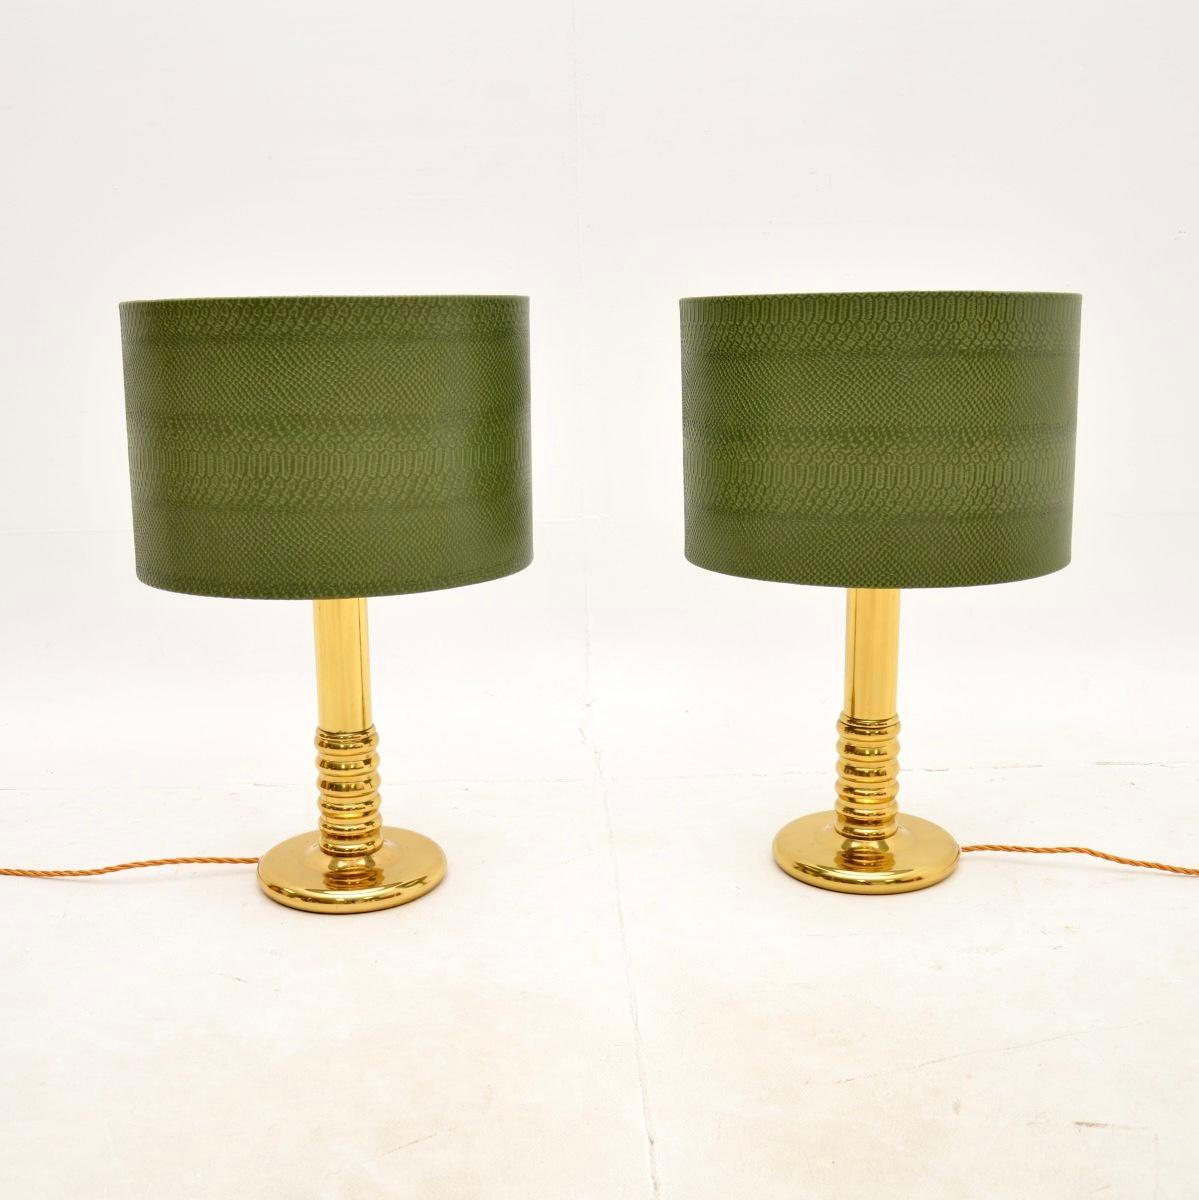 Ein sehr stilvolles und gut gemachtes Paar schwedischer Vintage-Messing-Tischlampen. Wir haben sie vor kurzem aus Schweden importiert, sie stammen etwa aus den 1970er Jahren.

Sie sind von hervorragender Qualität und haben ein fantastisches Design.